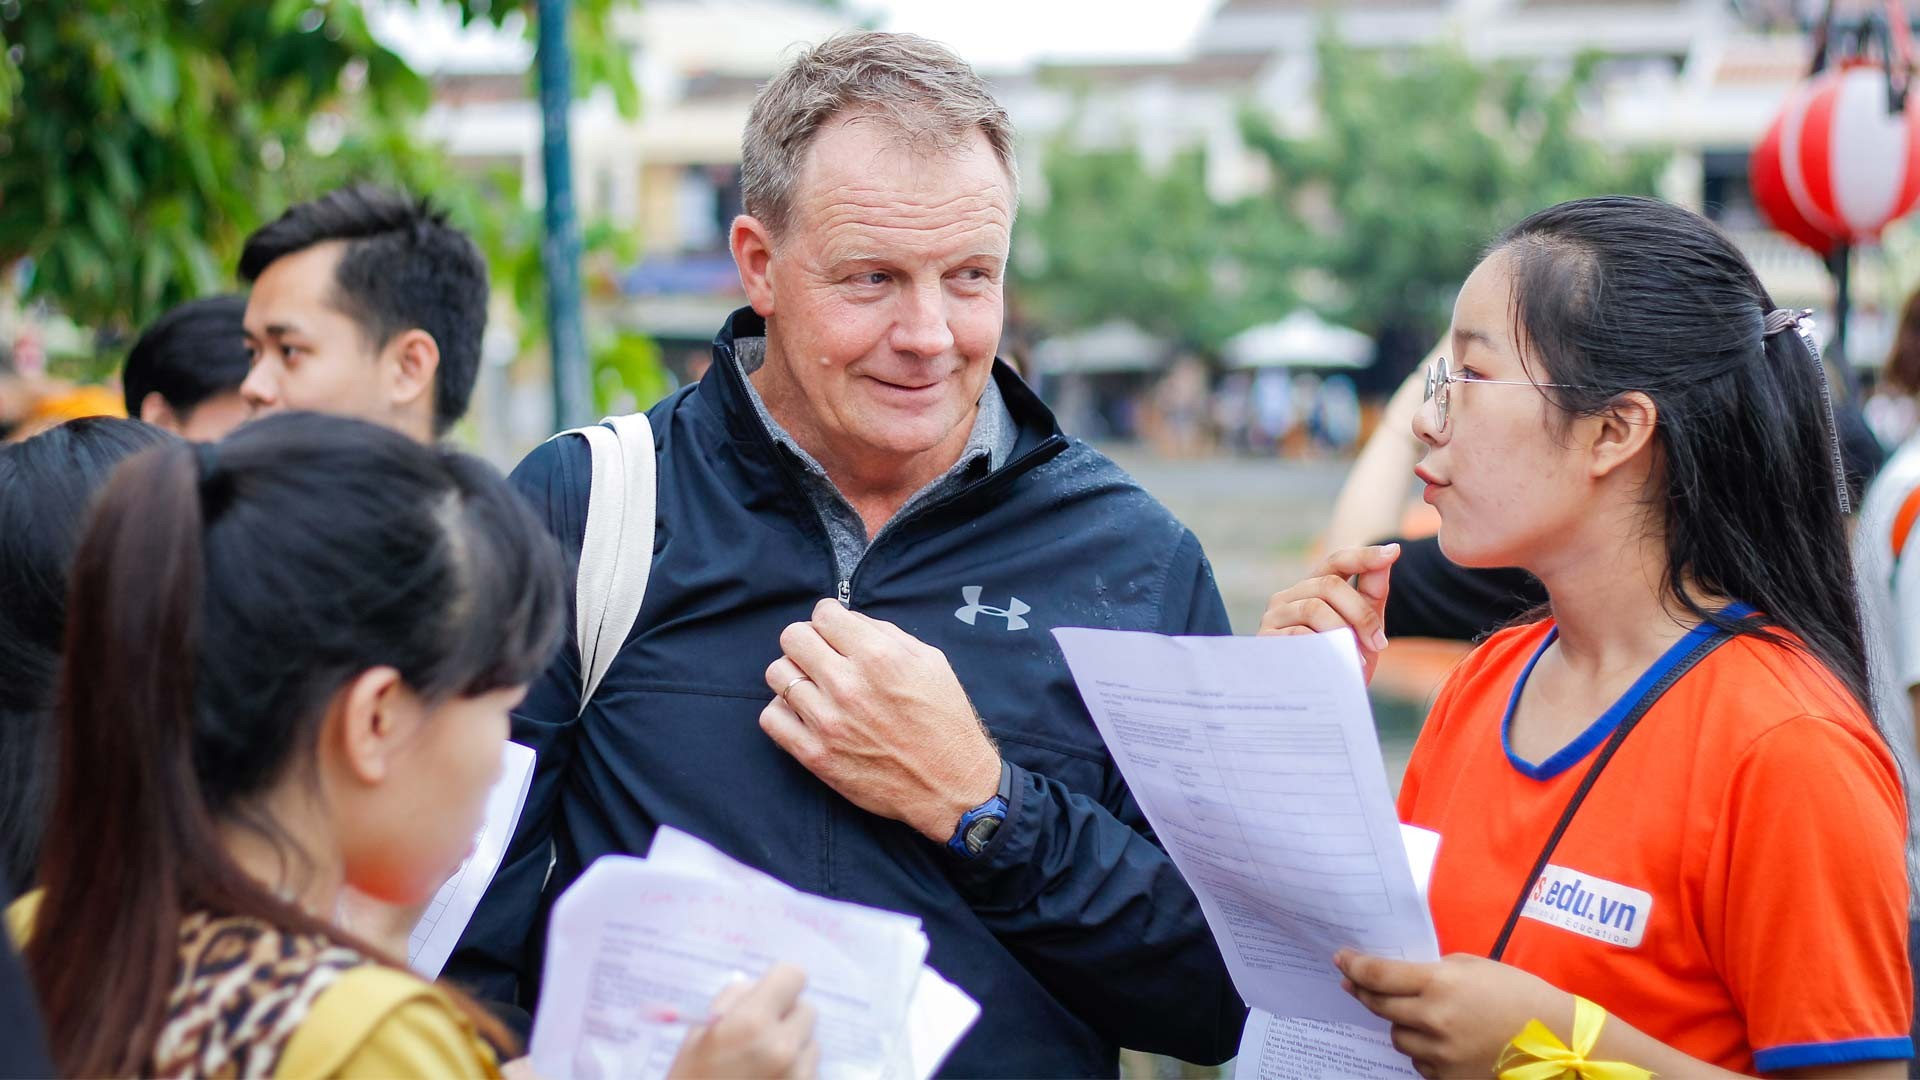 Anh ngữ IRIS: trung tâm tiếng Anh cho người đi làm tại quận Sơn Trà - Đà Nẵng